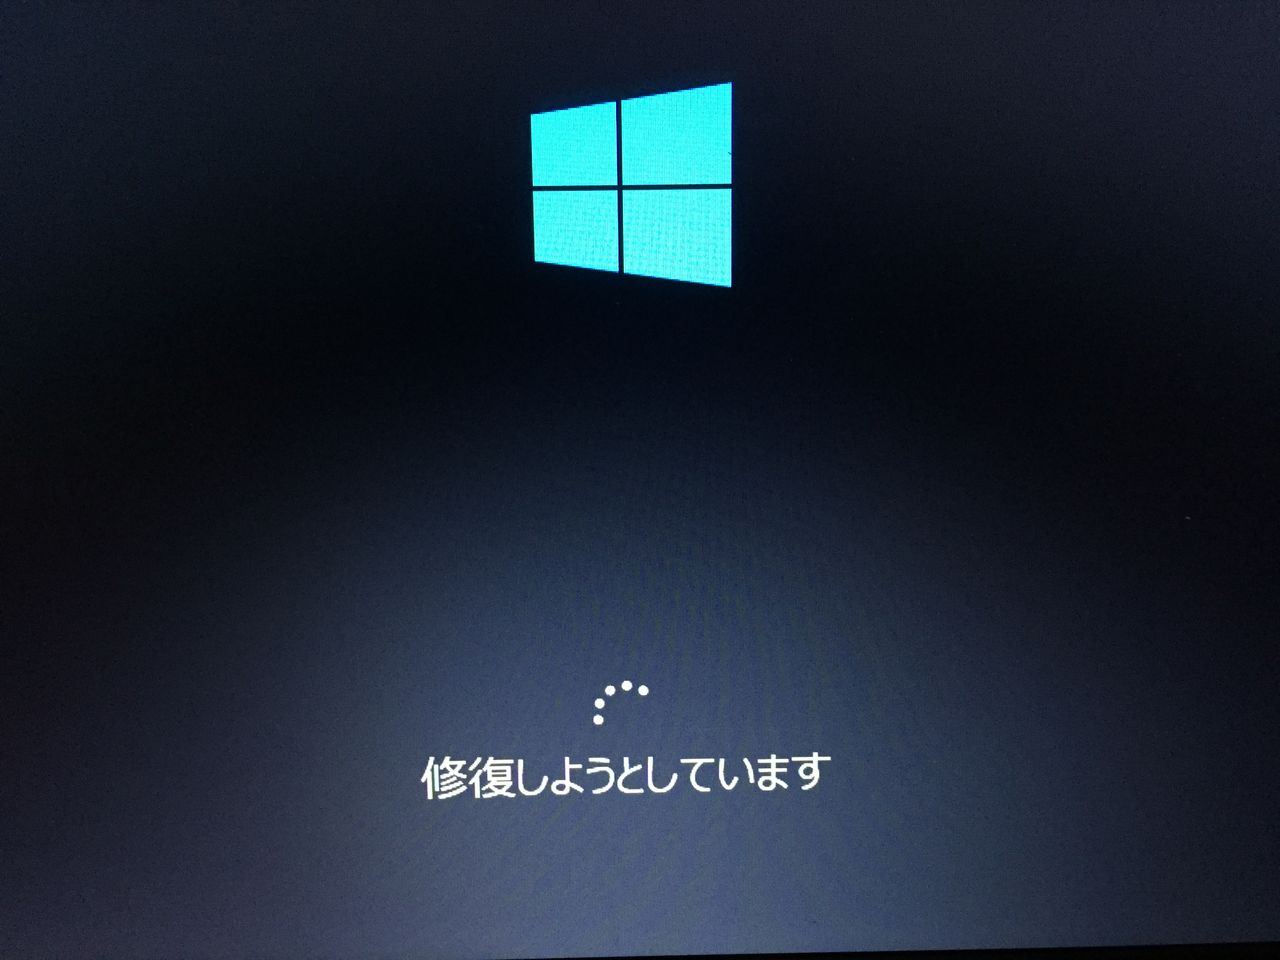 トラブル Windows10 起動不可になる 再起動を繰り返す Something Not Found 行き当たりバッタリのpcライフー